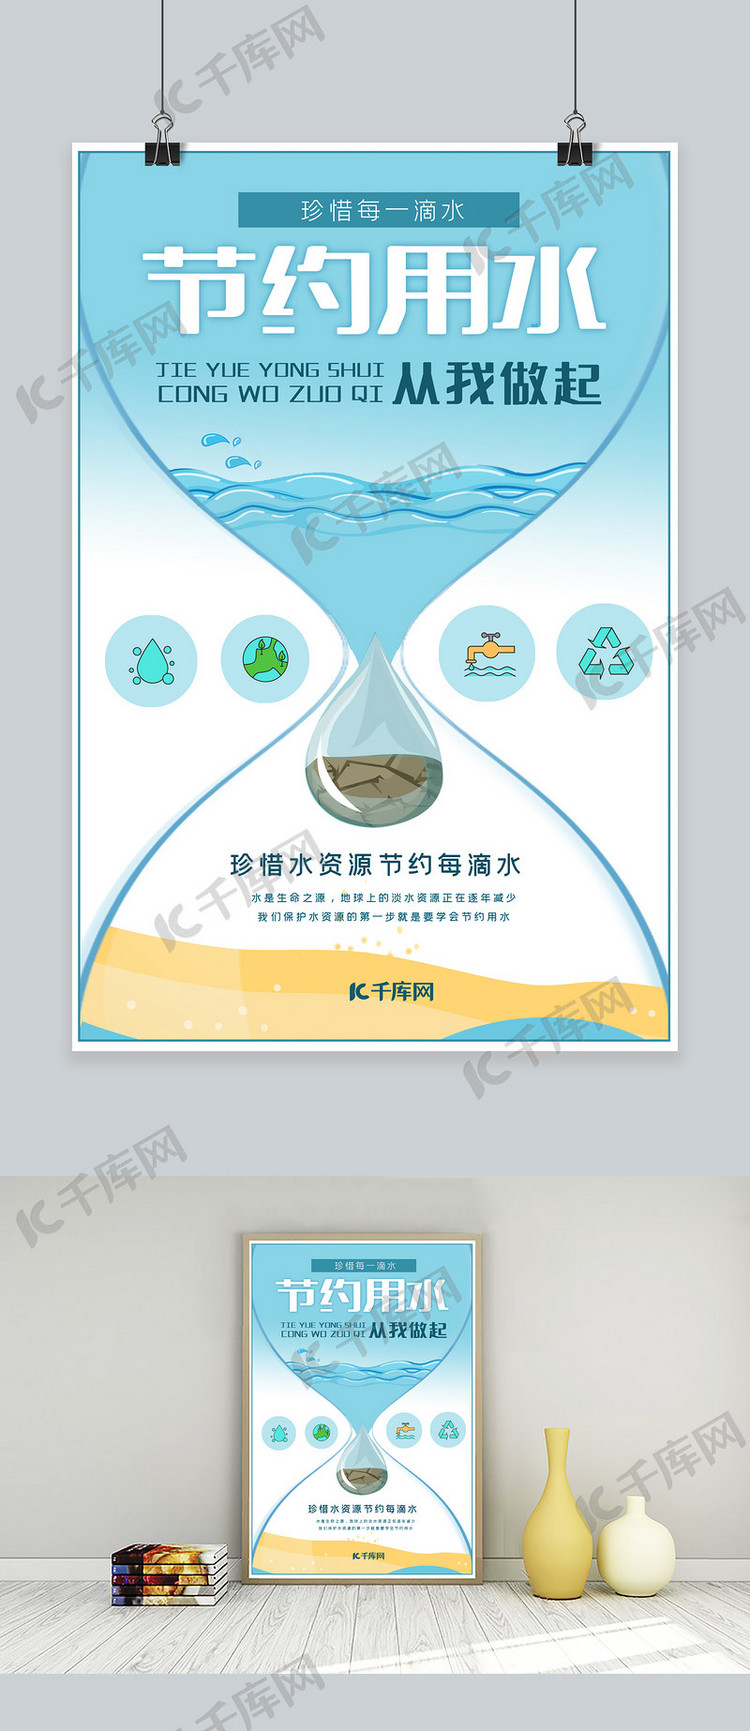 节约用水珍惜水资源公益宣传海报